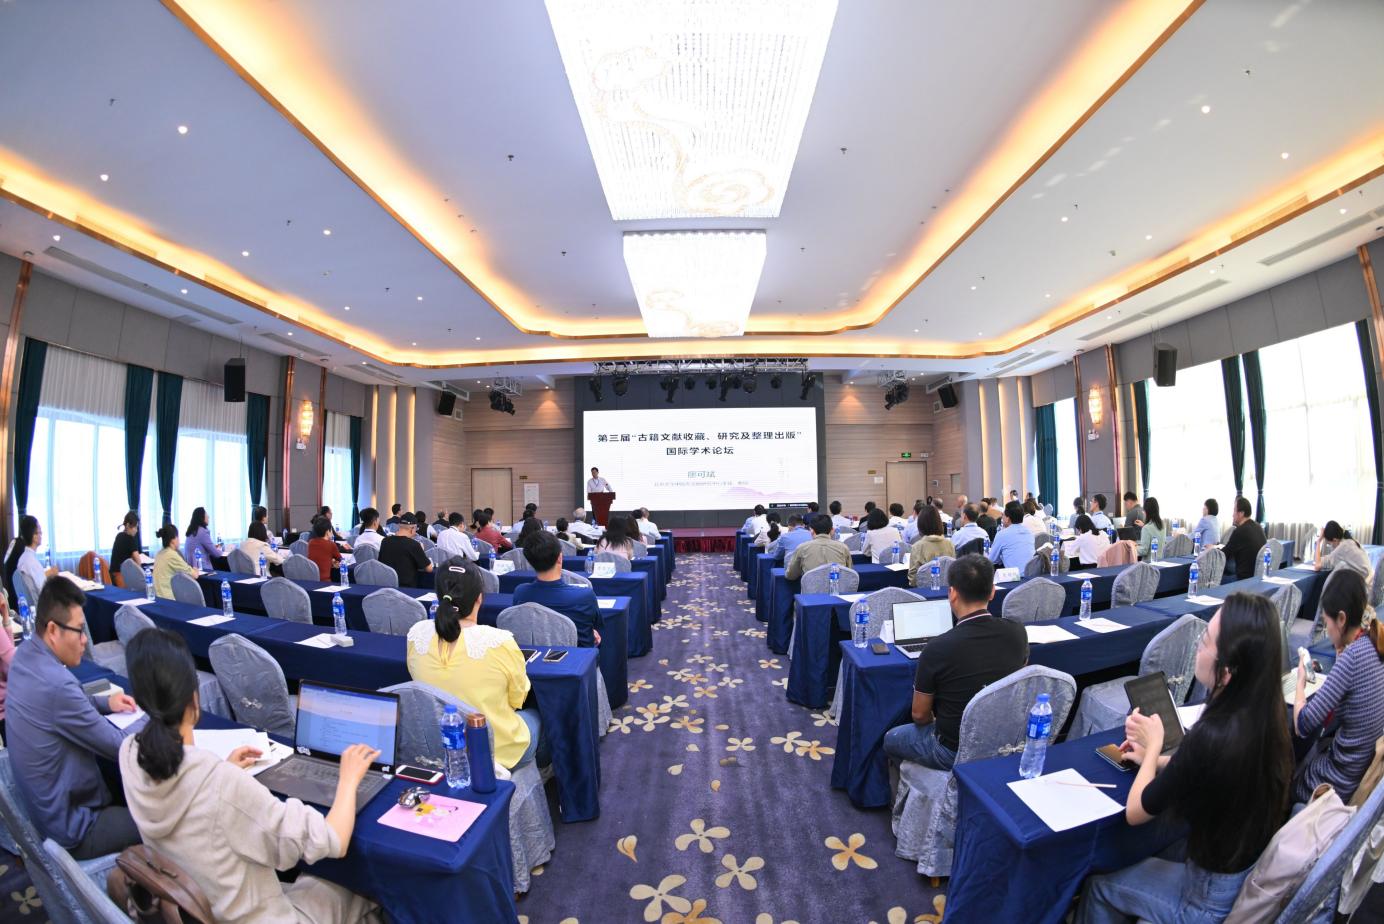 第三届“古籍文献收藏、研究及整理出版”国际学术论坛在桂林举办